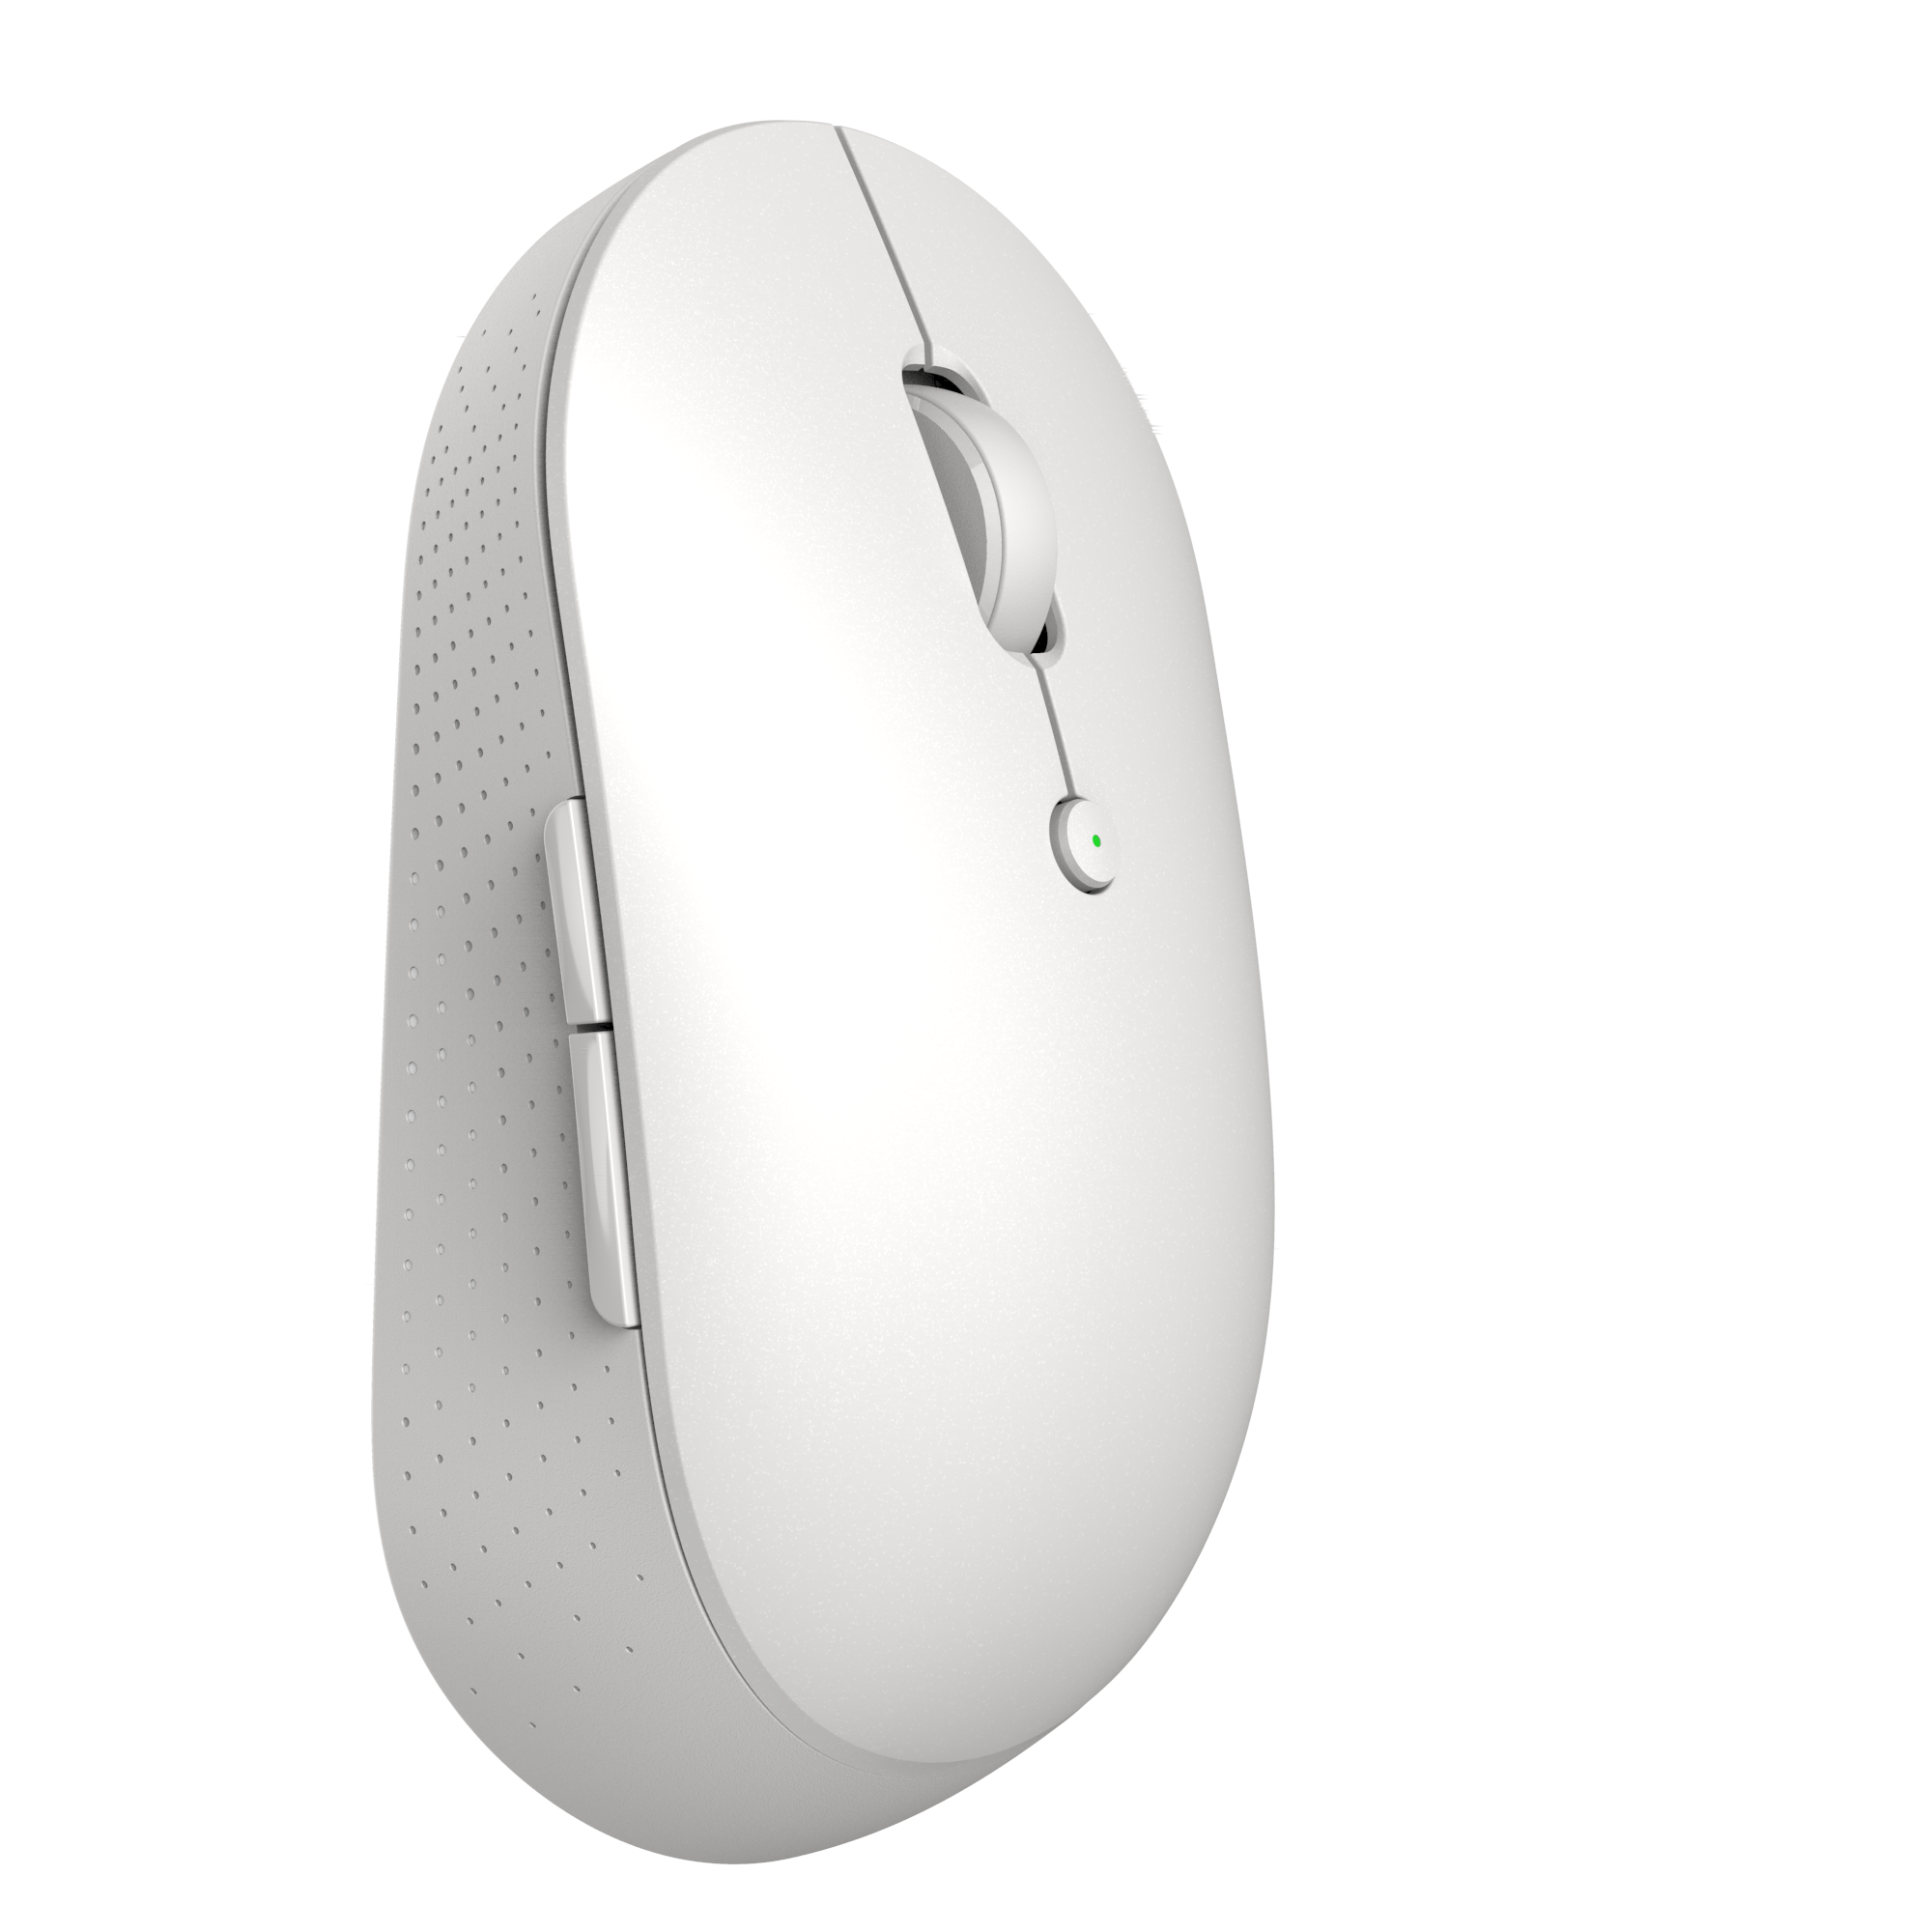 Bežični miš Xiaomi Mi Dual Mode Silent Edition (White)